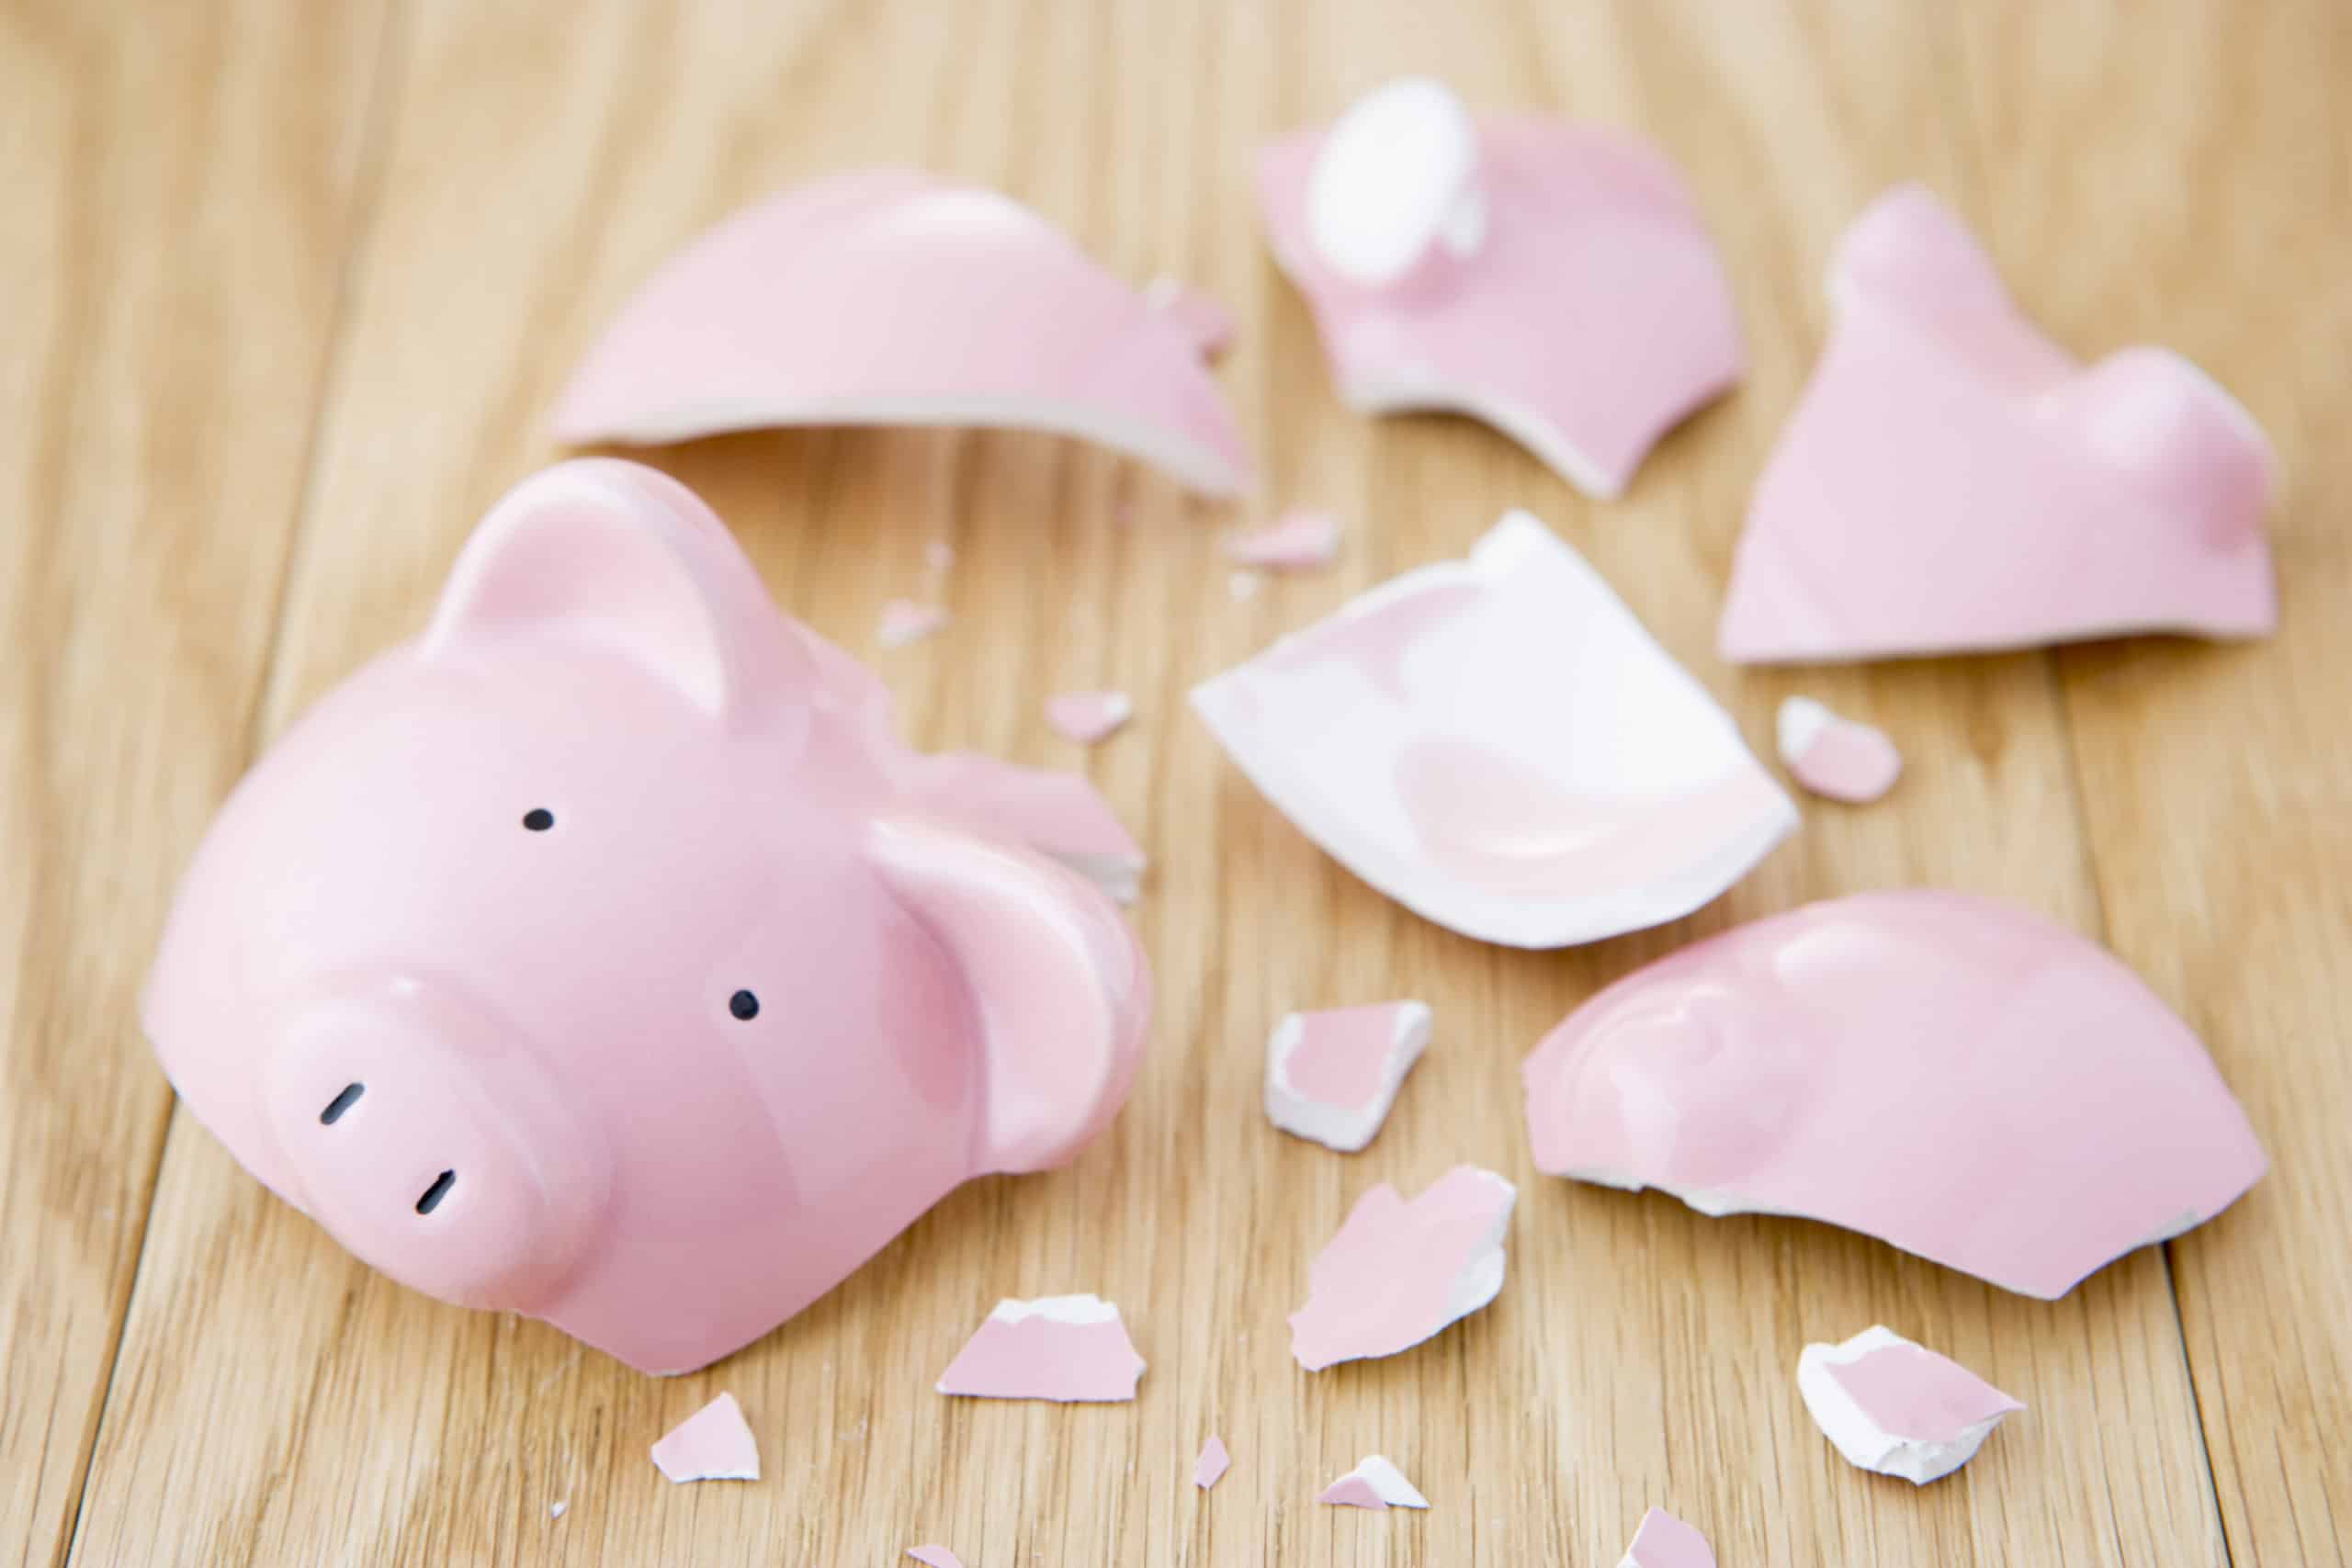 A broken pink ceramic piggy bank symbolizing failure to budget money